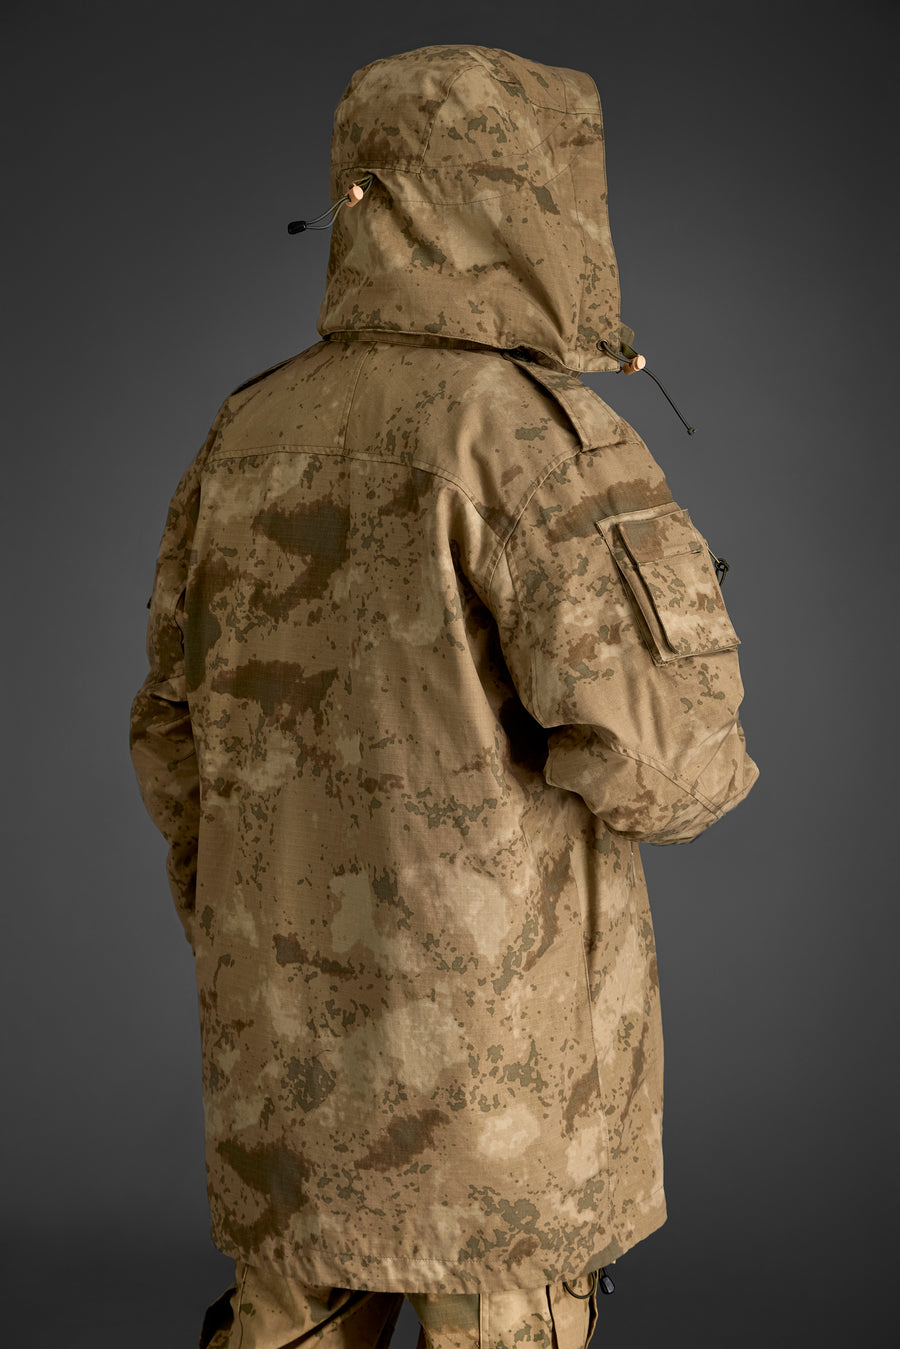 Desert Camouflage BDU designed for Gendarmerie forces